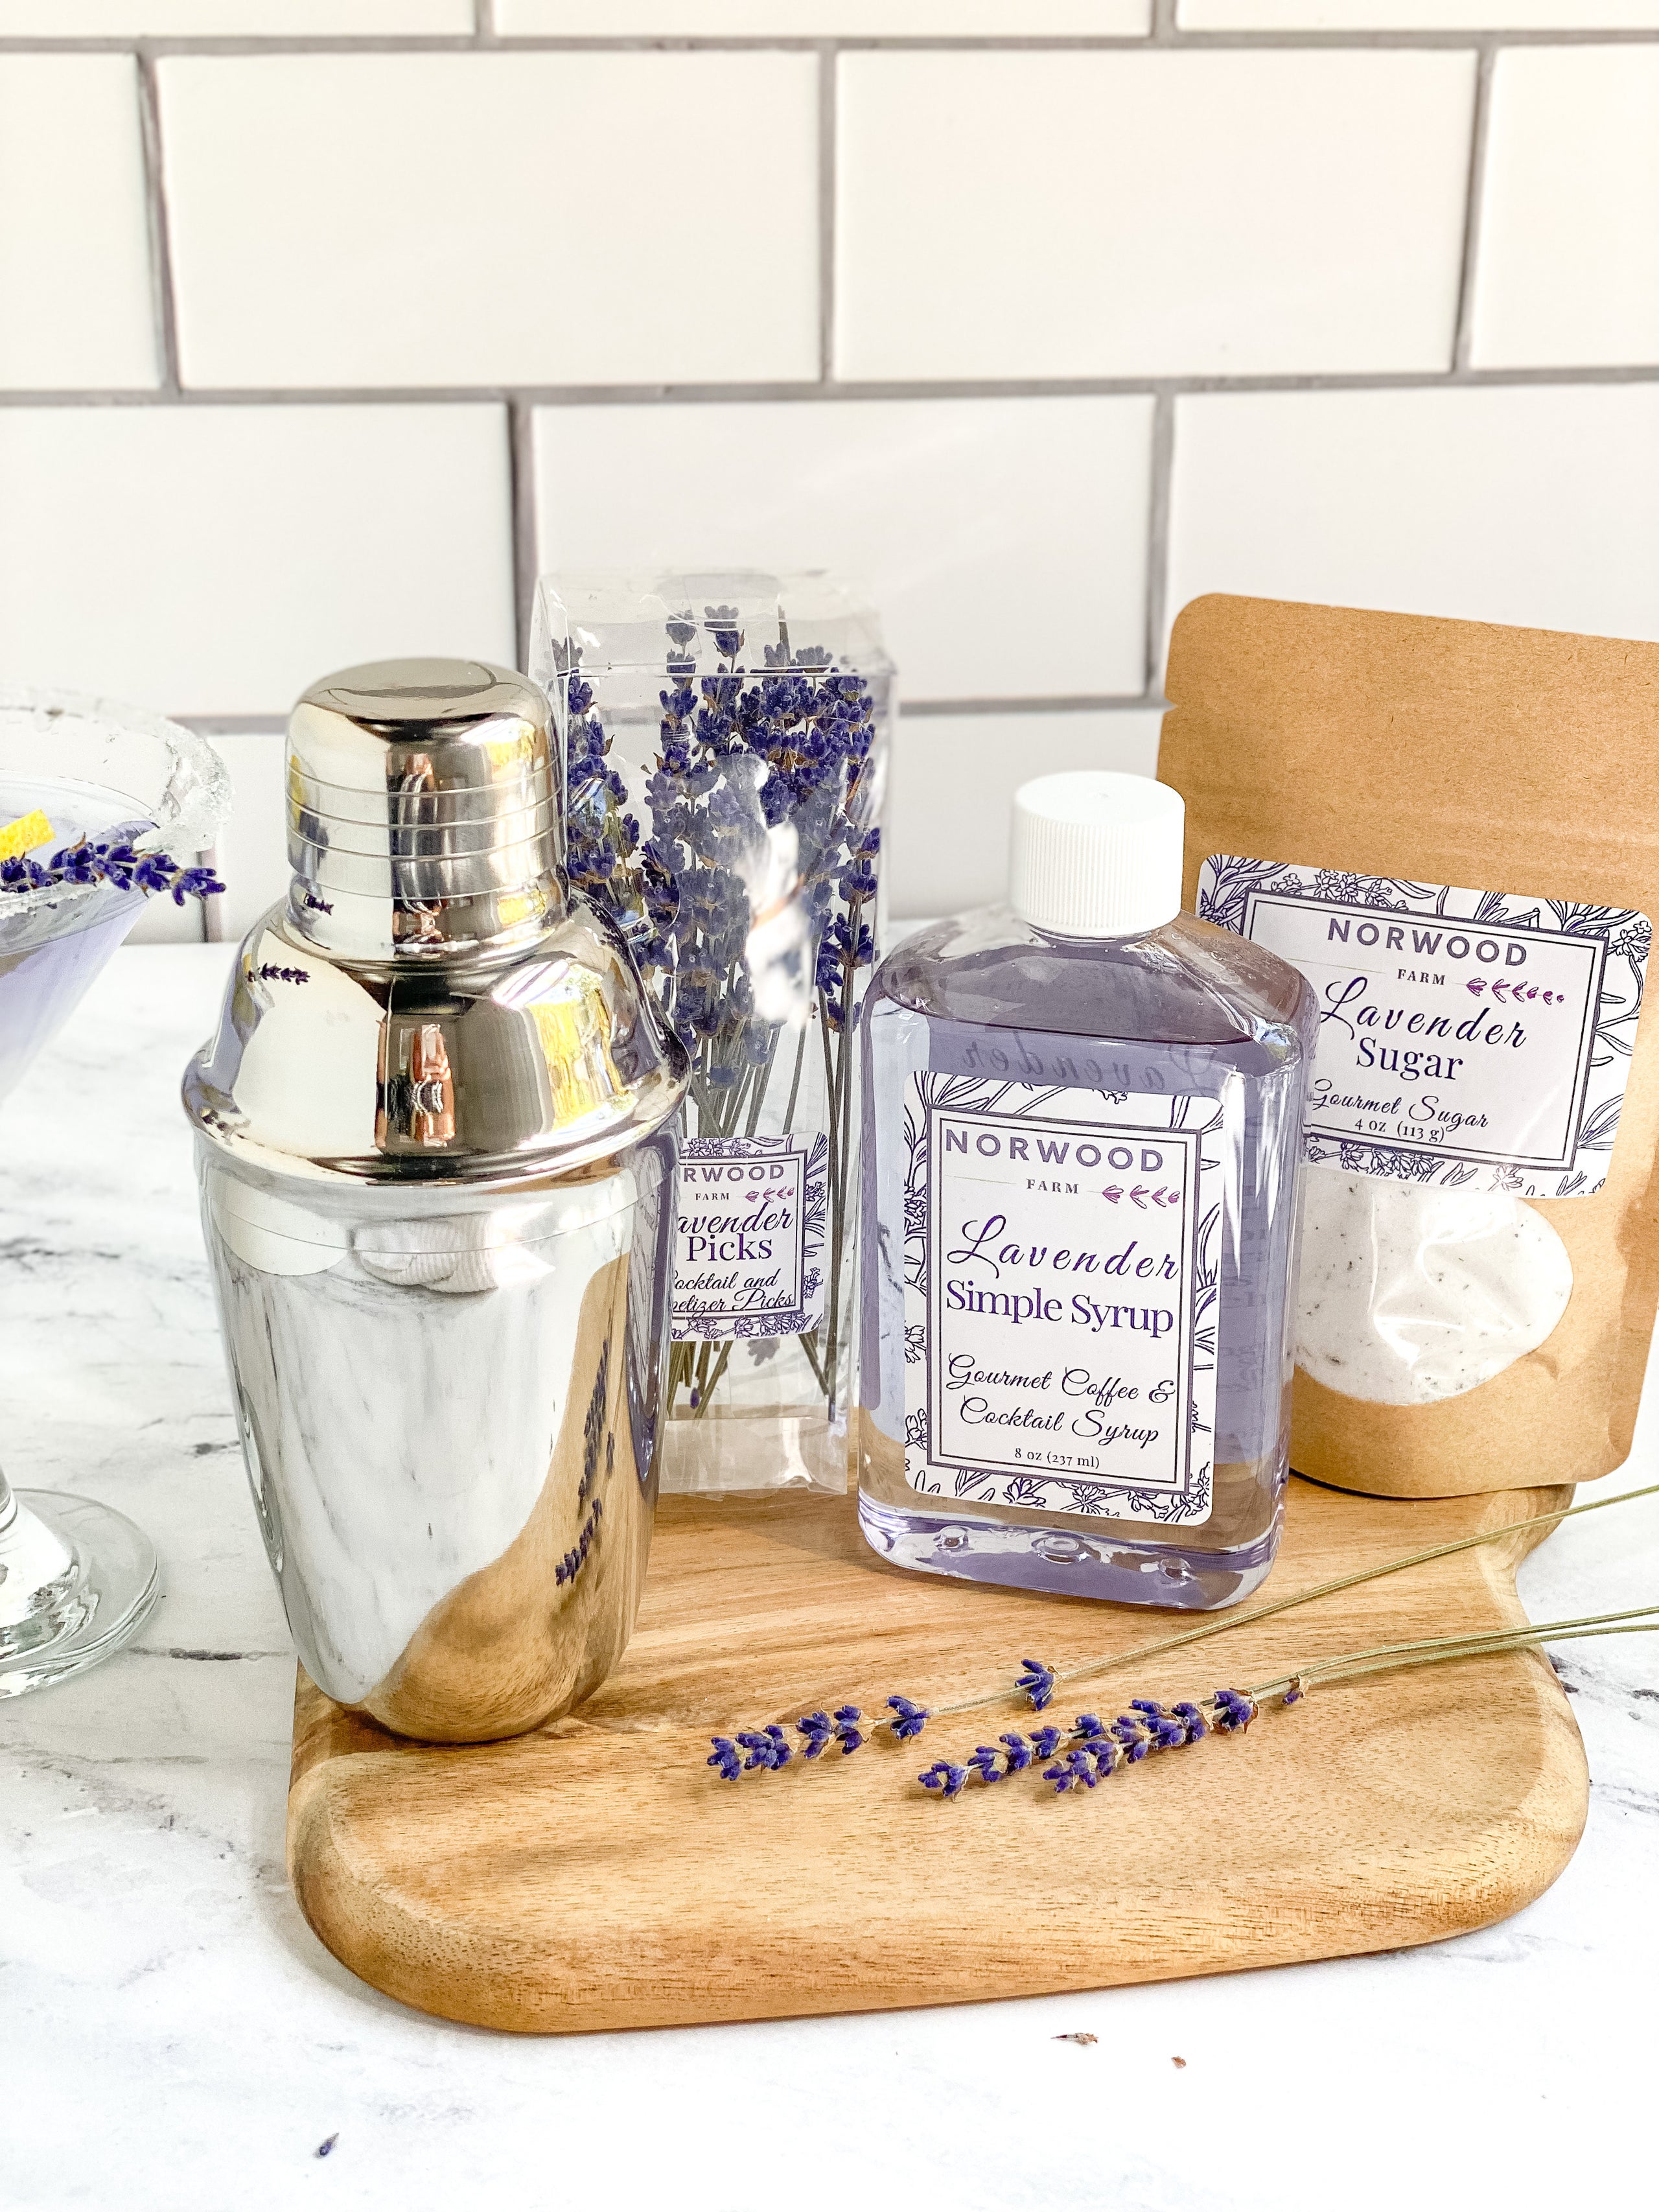 Lavender Cocktail Gift Set